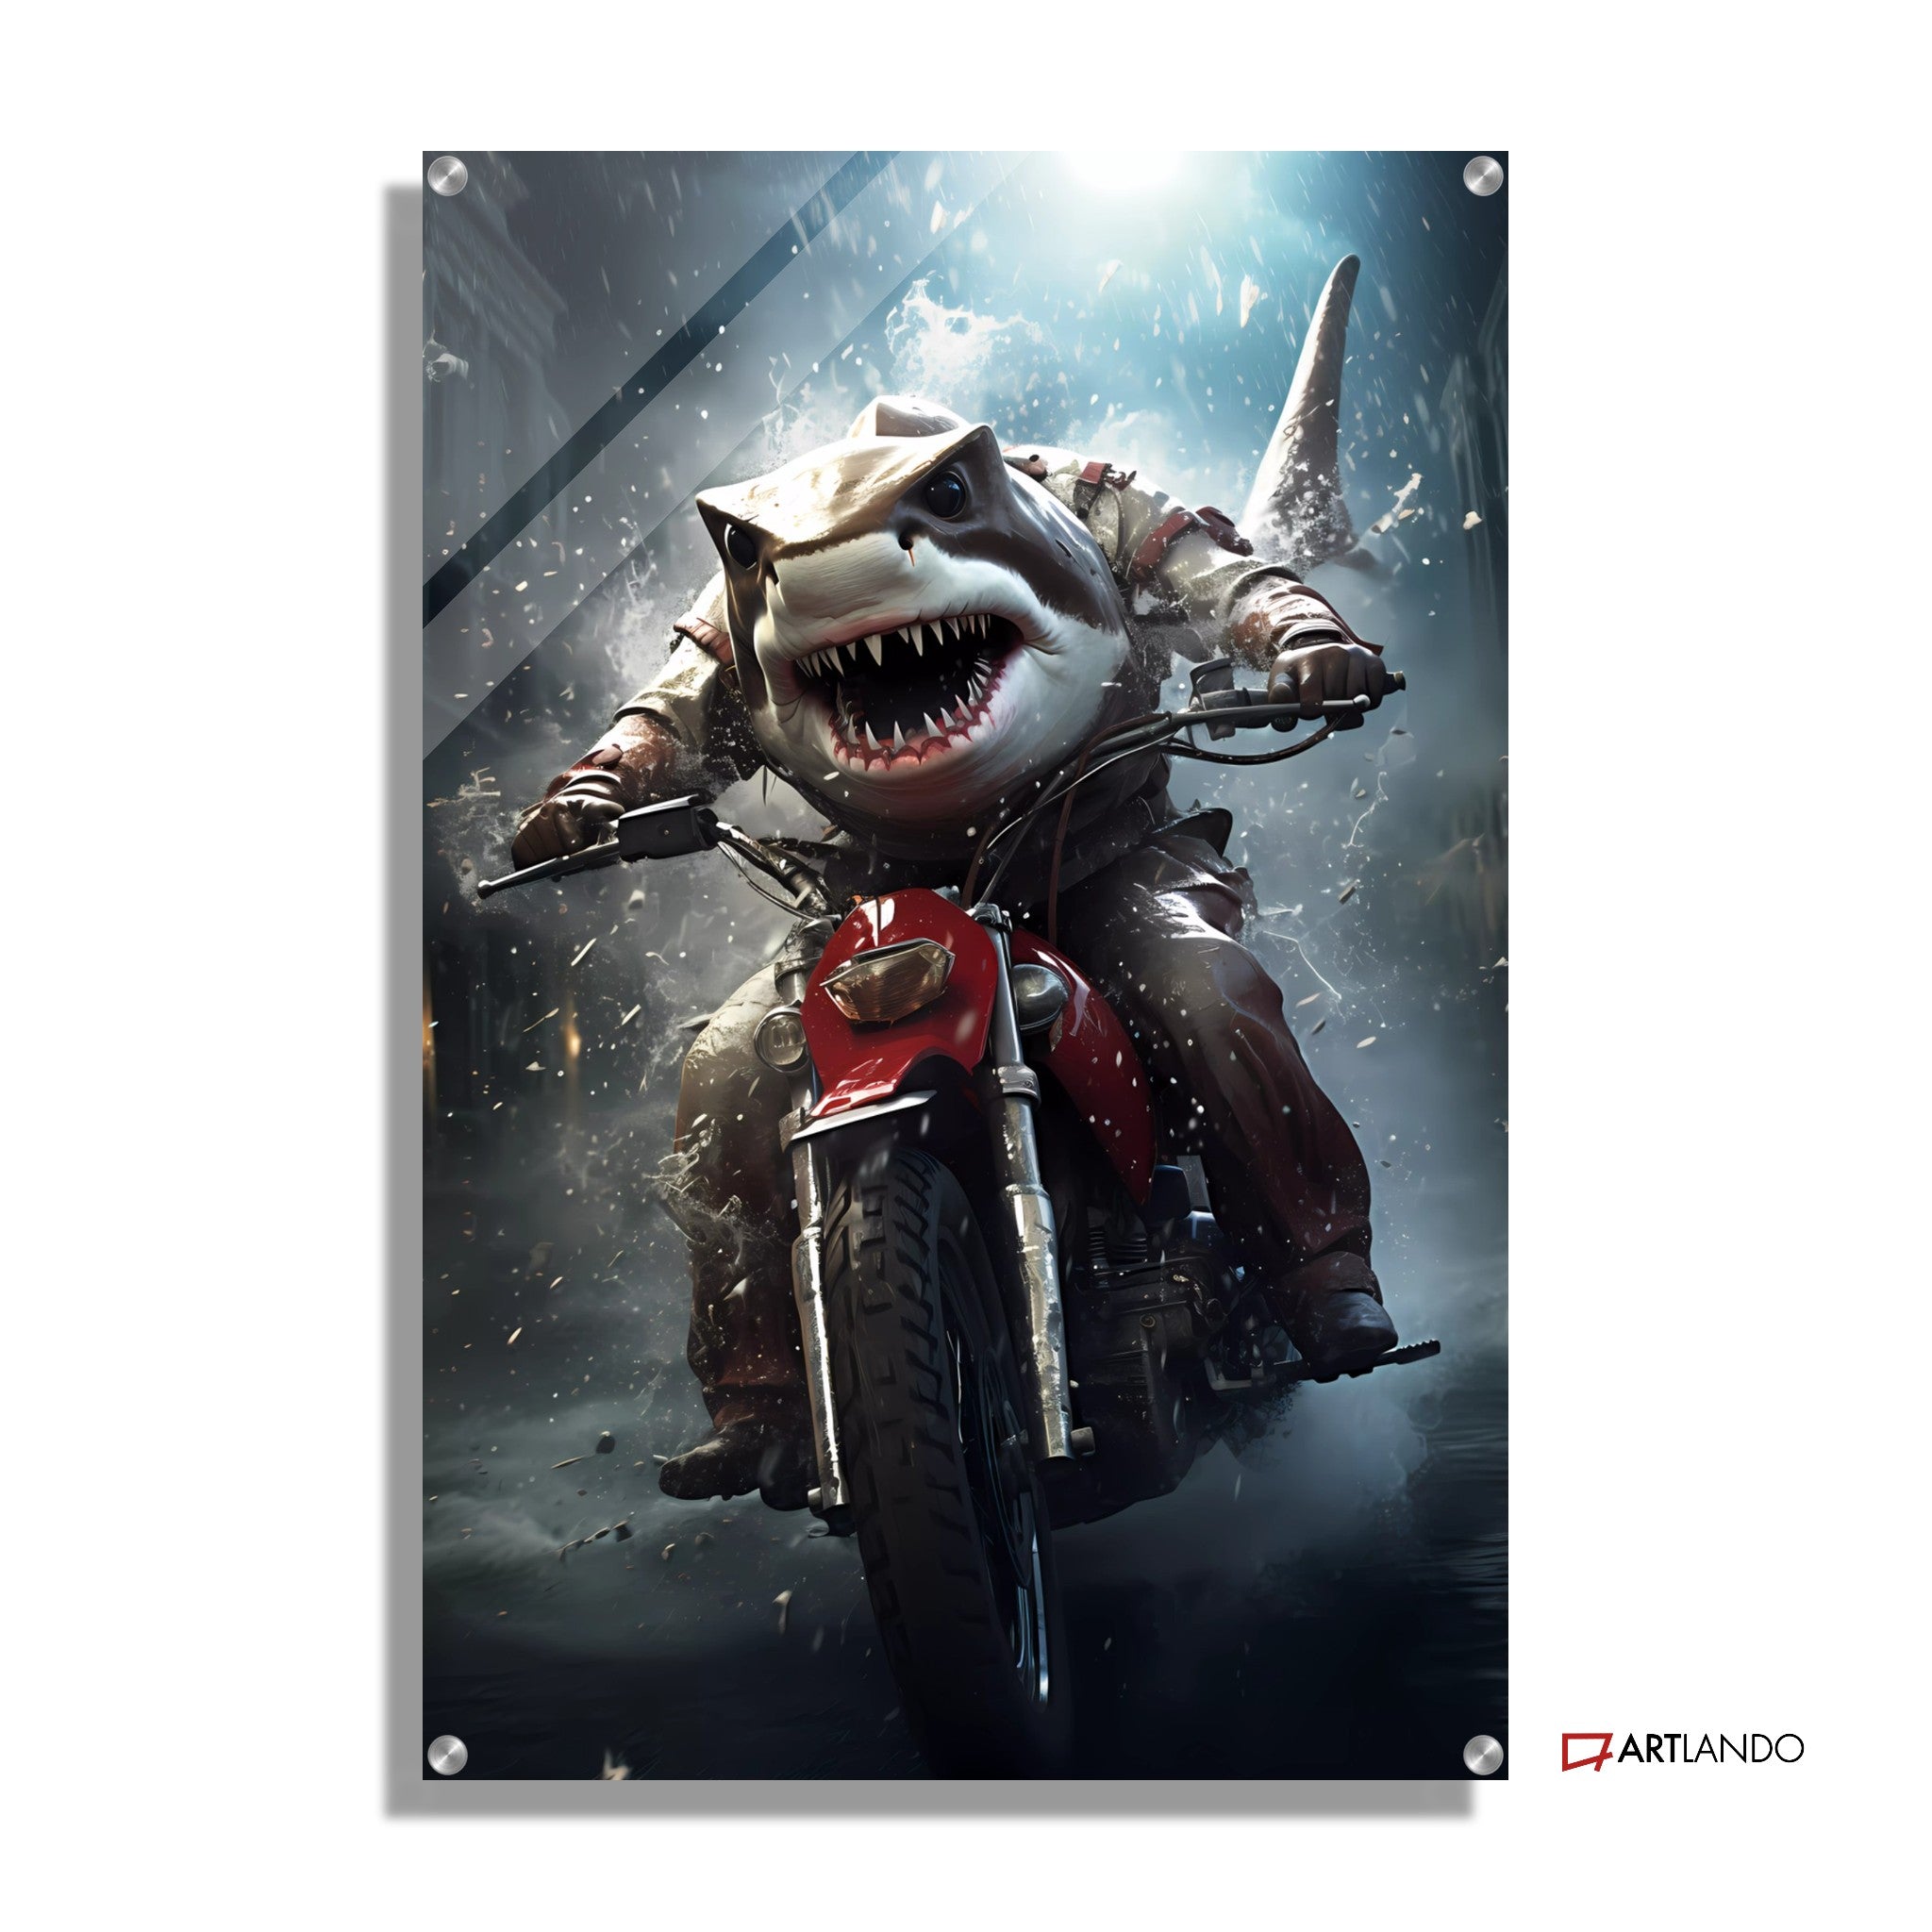 Weißer Hai auf Motorrad